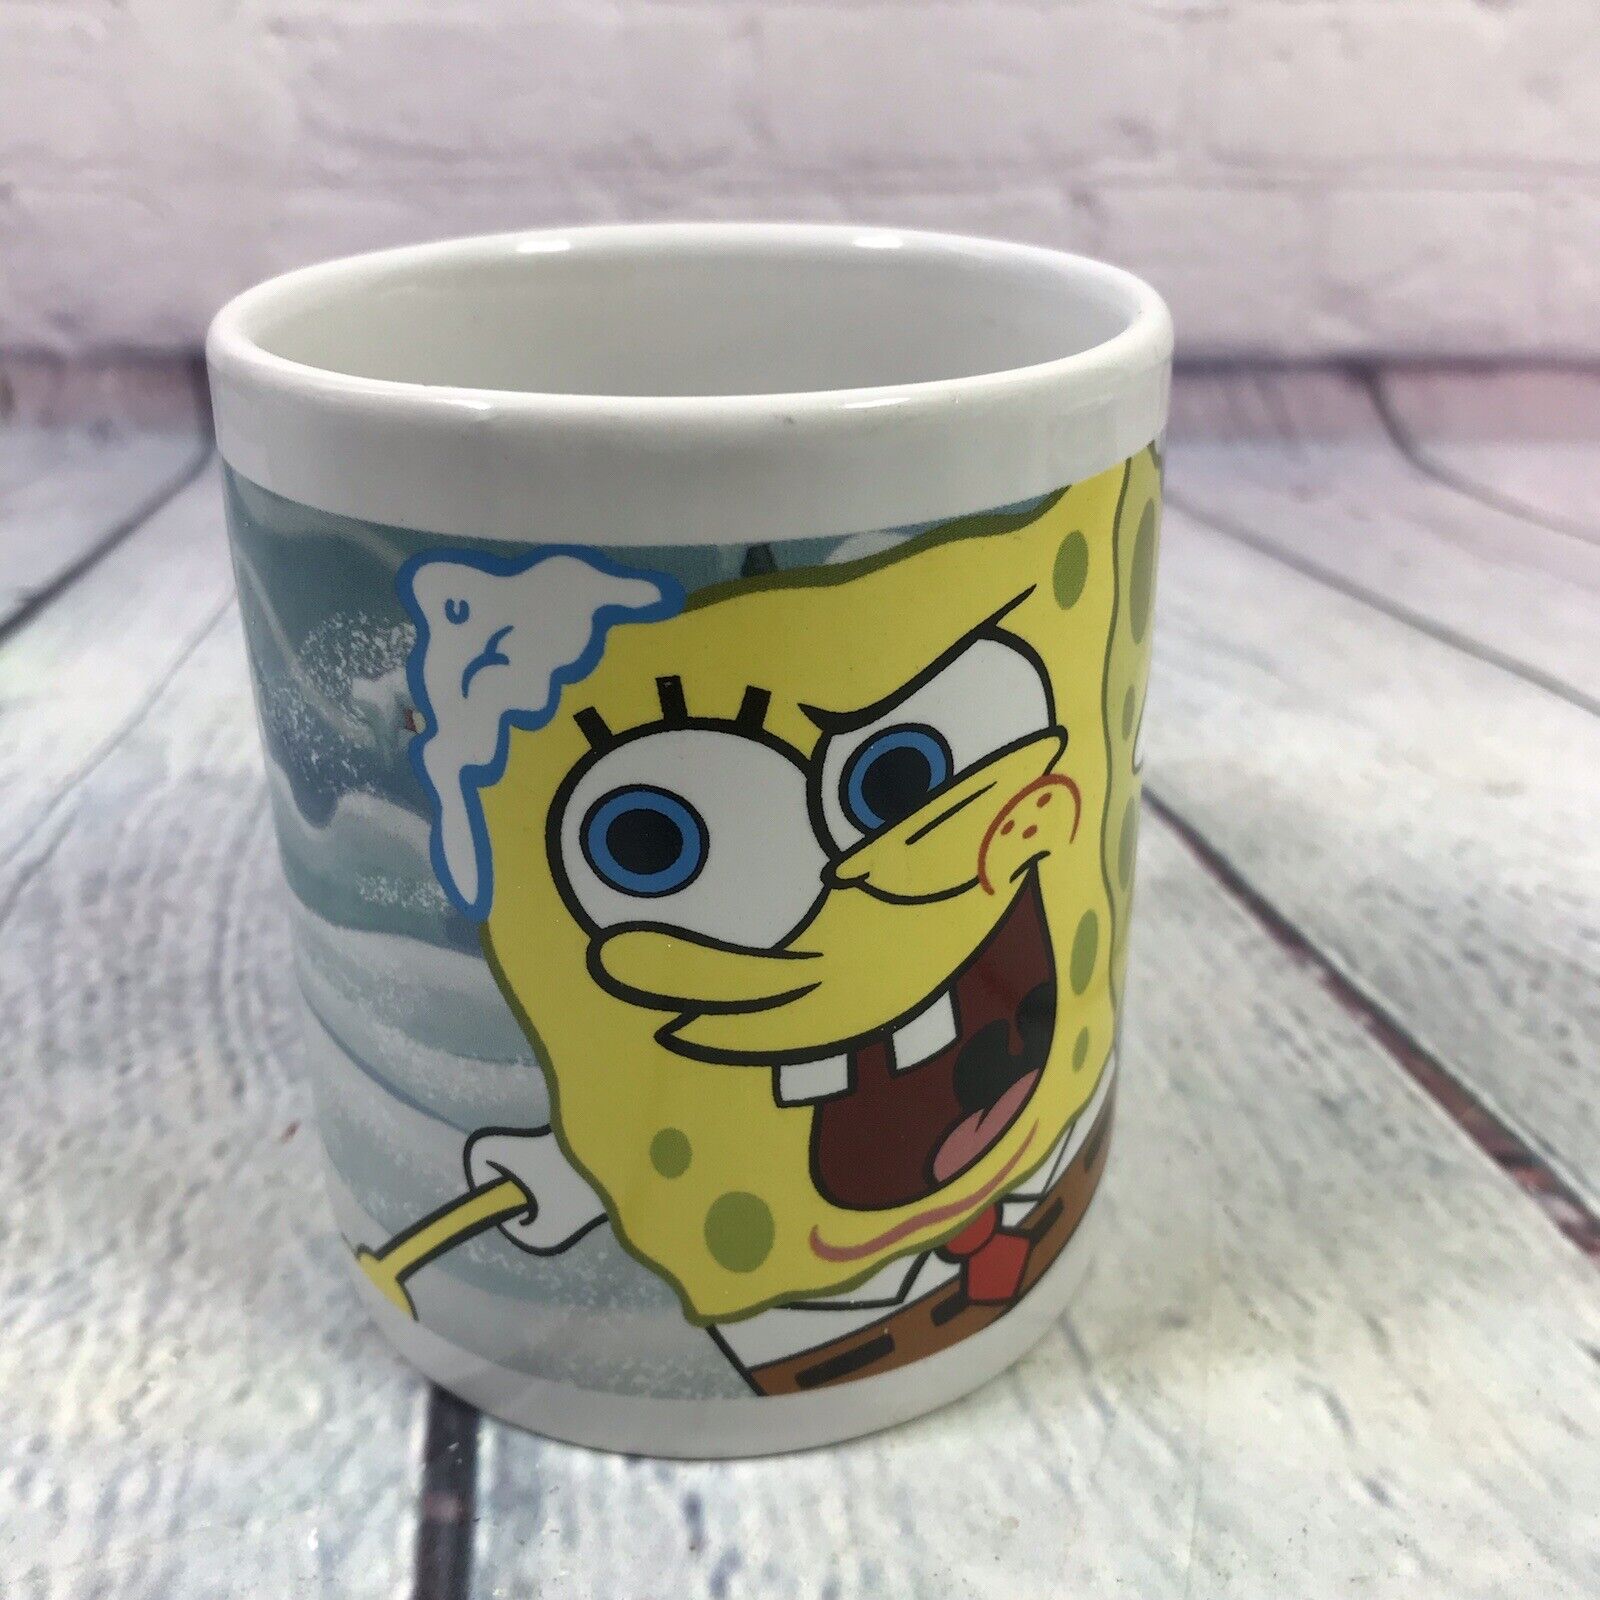 2007 SpongeBob Squarepants & Patrick Coffee Cup Mug Cartoon Viacom Ceramic